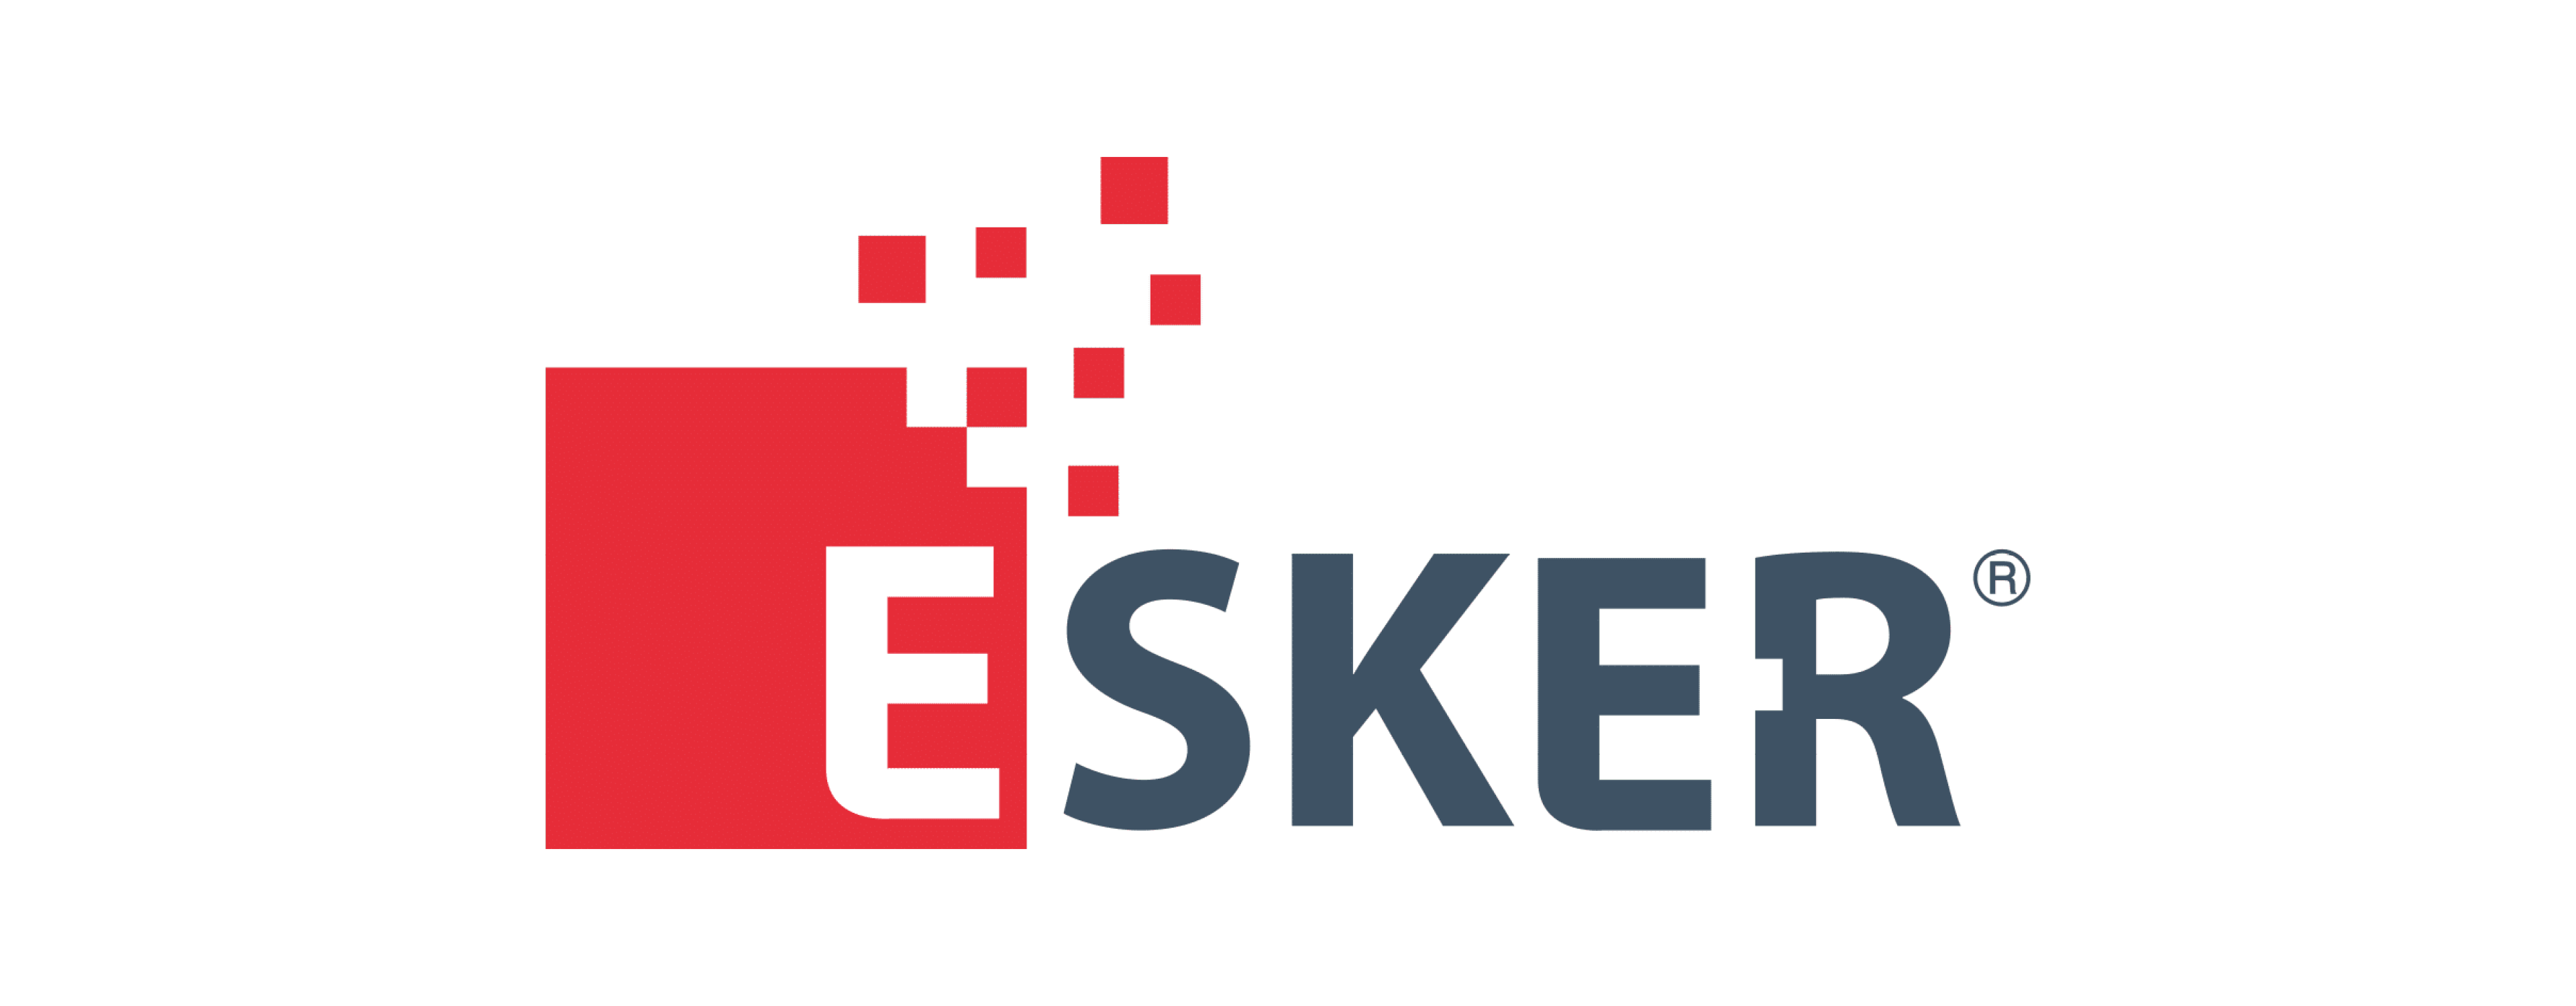 Esker logo